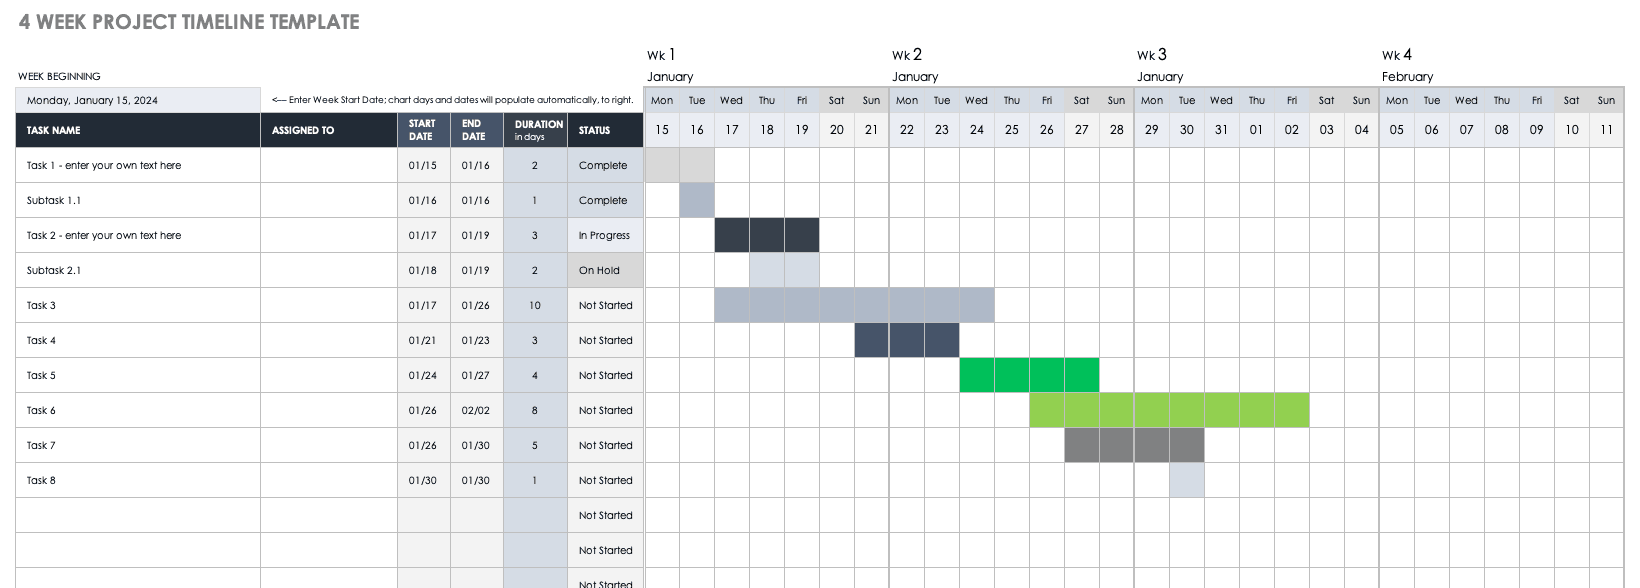 4周项目时间表模板